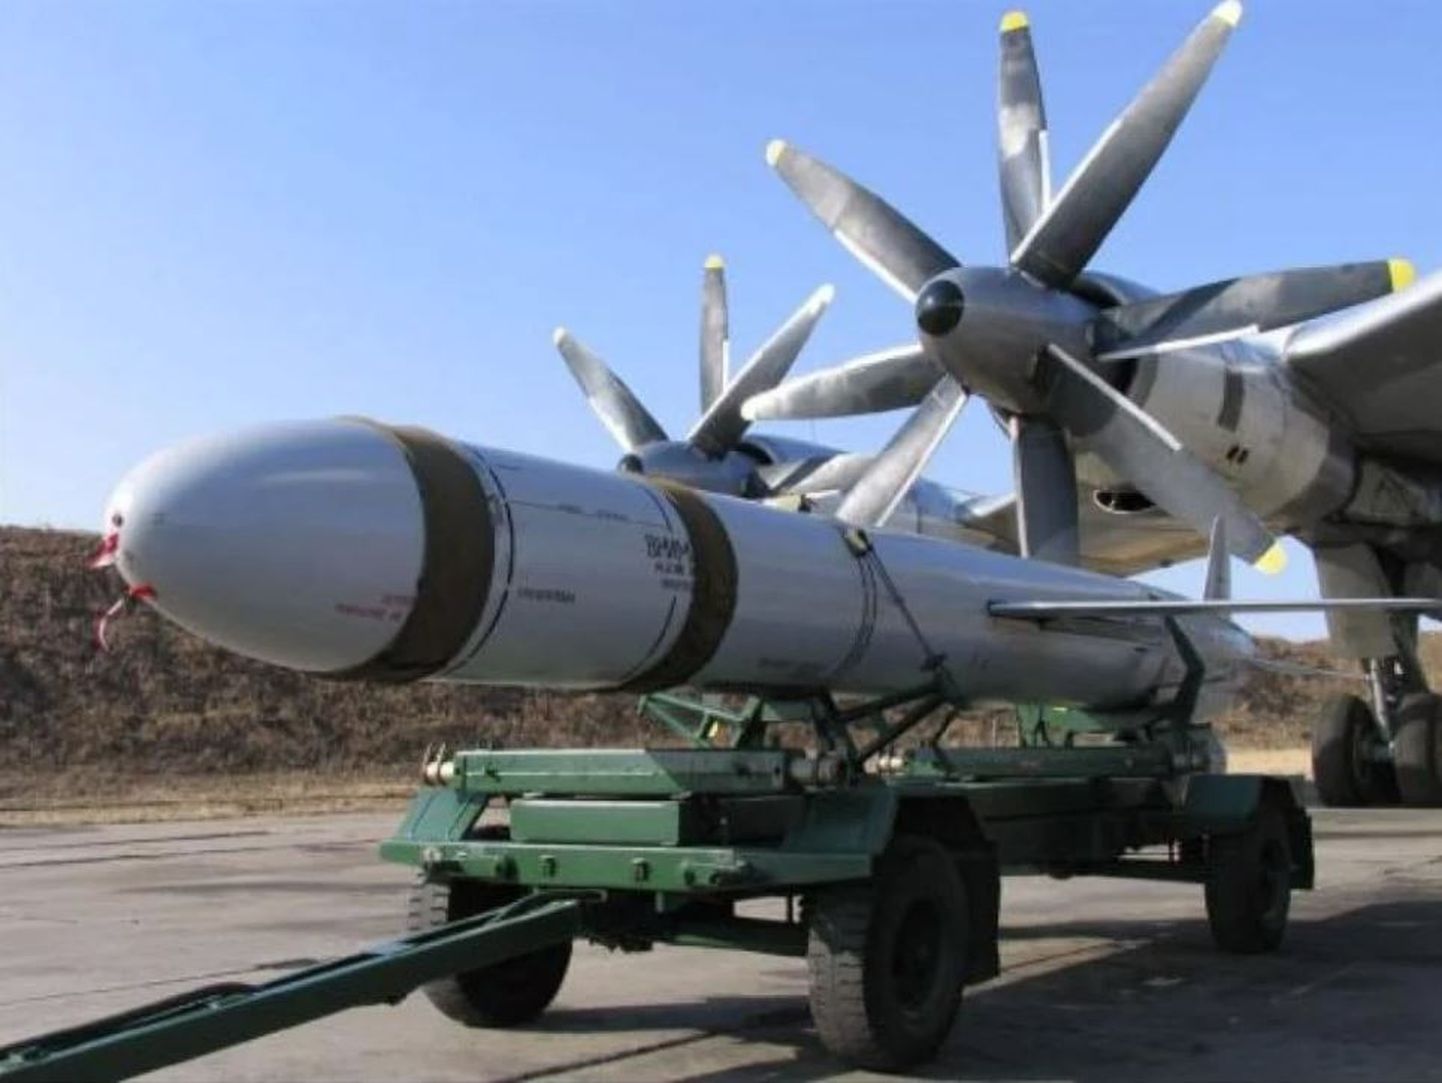 15 ноября Россия выпустила около 100 крылатых ракет Х-101 и Х-555 по целям в Украине.